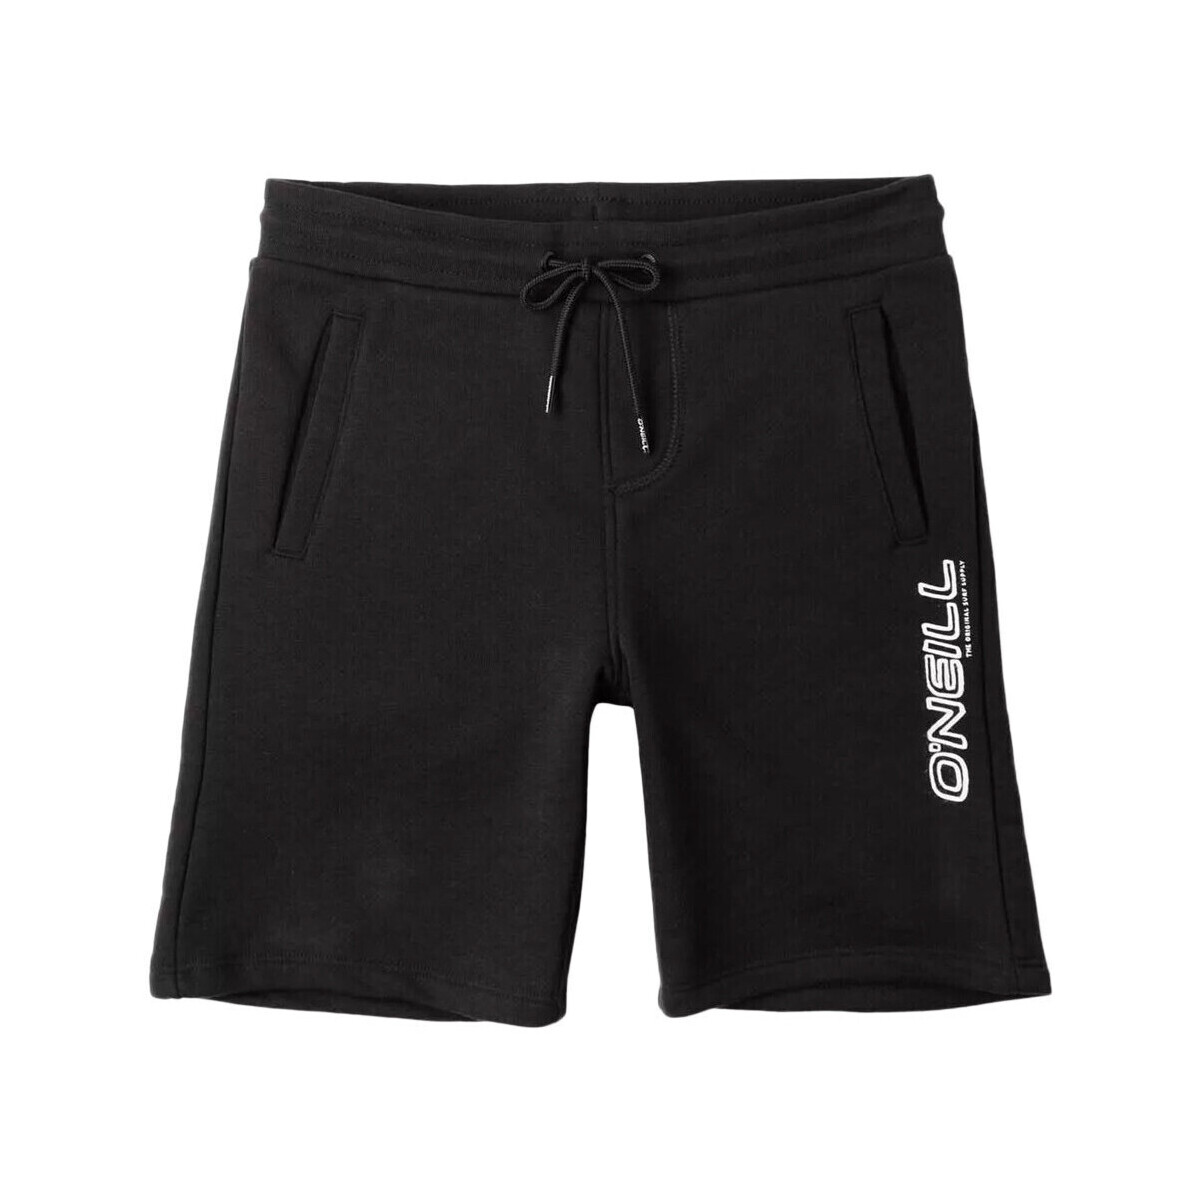 Vêtements Garçon Shorts / Bermudas O'neill 4700006-19010 Noir